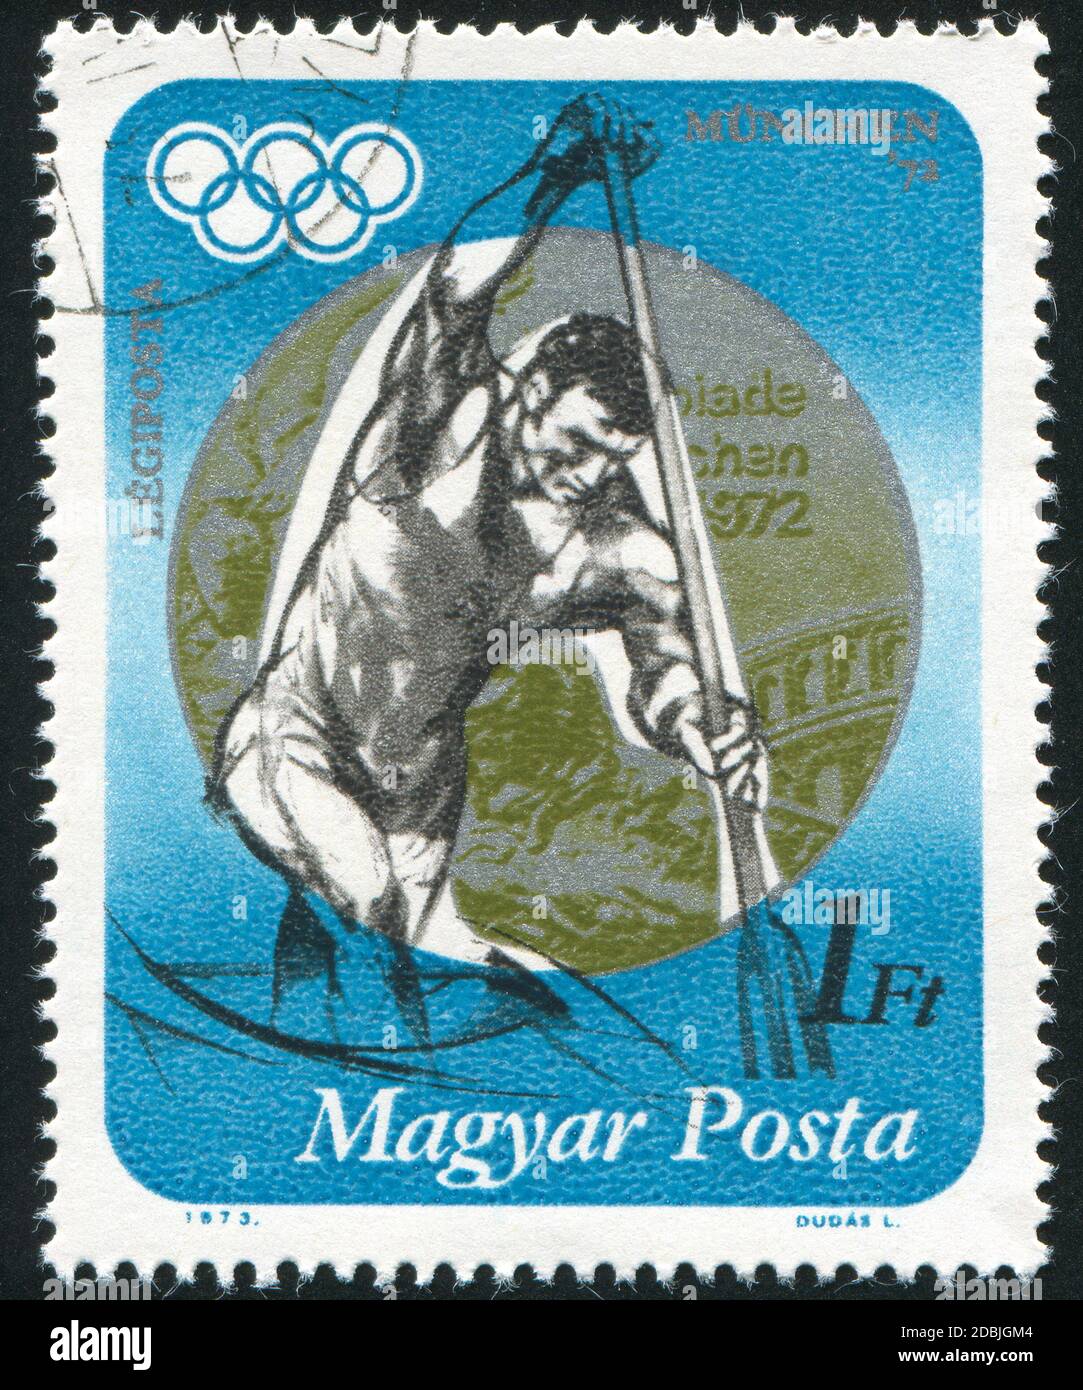 UNGARN - UM 1973: Briefmarke gedruckt von Ungarn, zeigt Rudersport, um 1973 Stockfoto